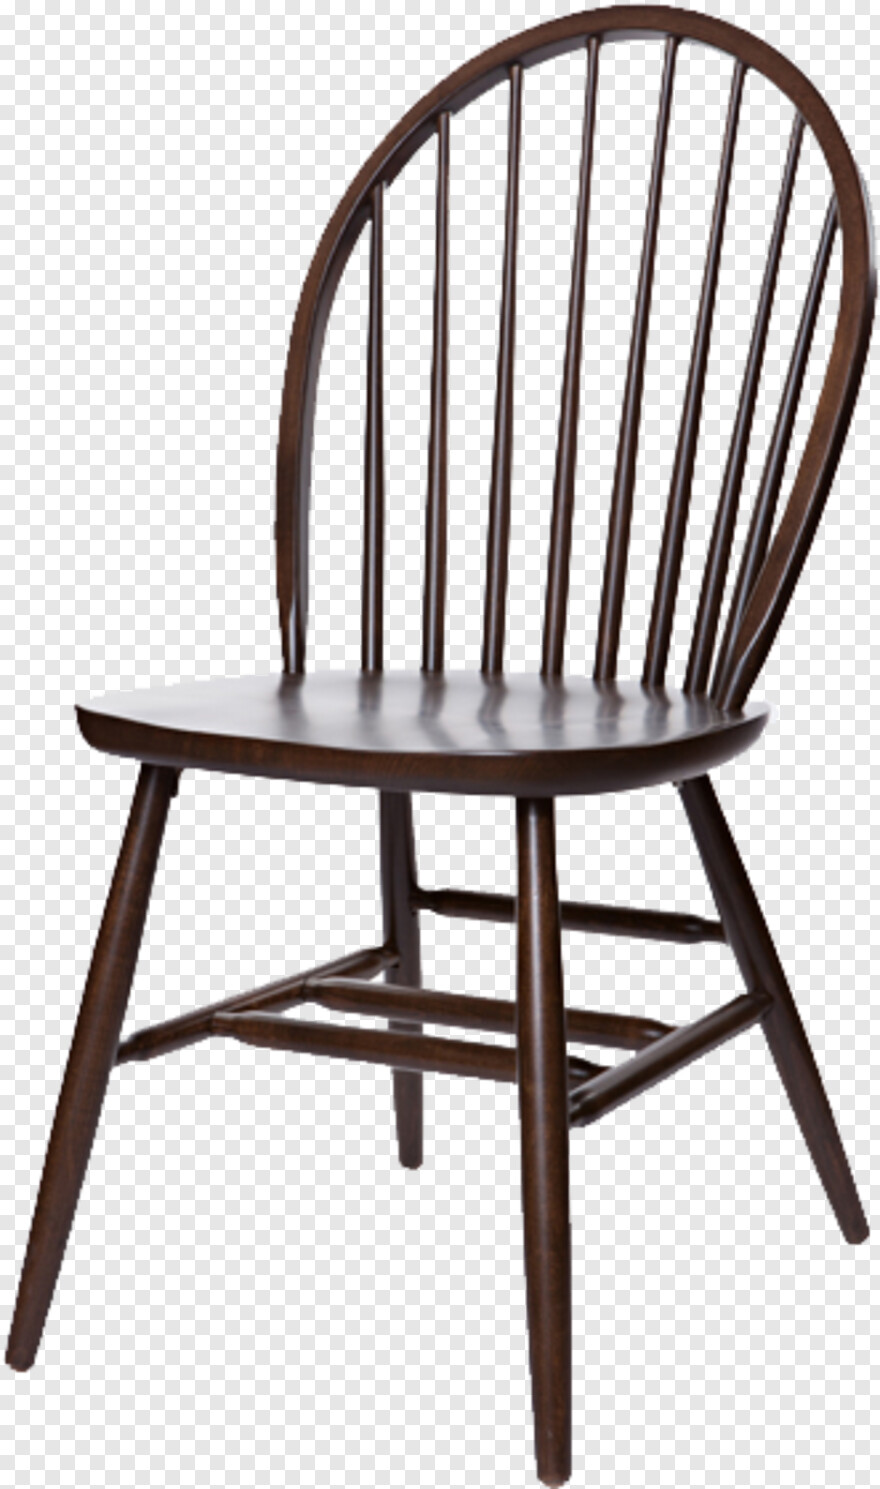 chair # 485639